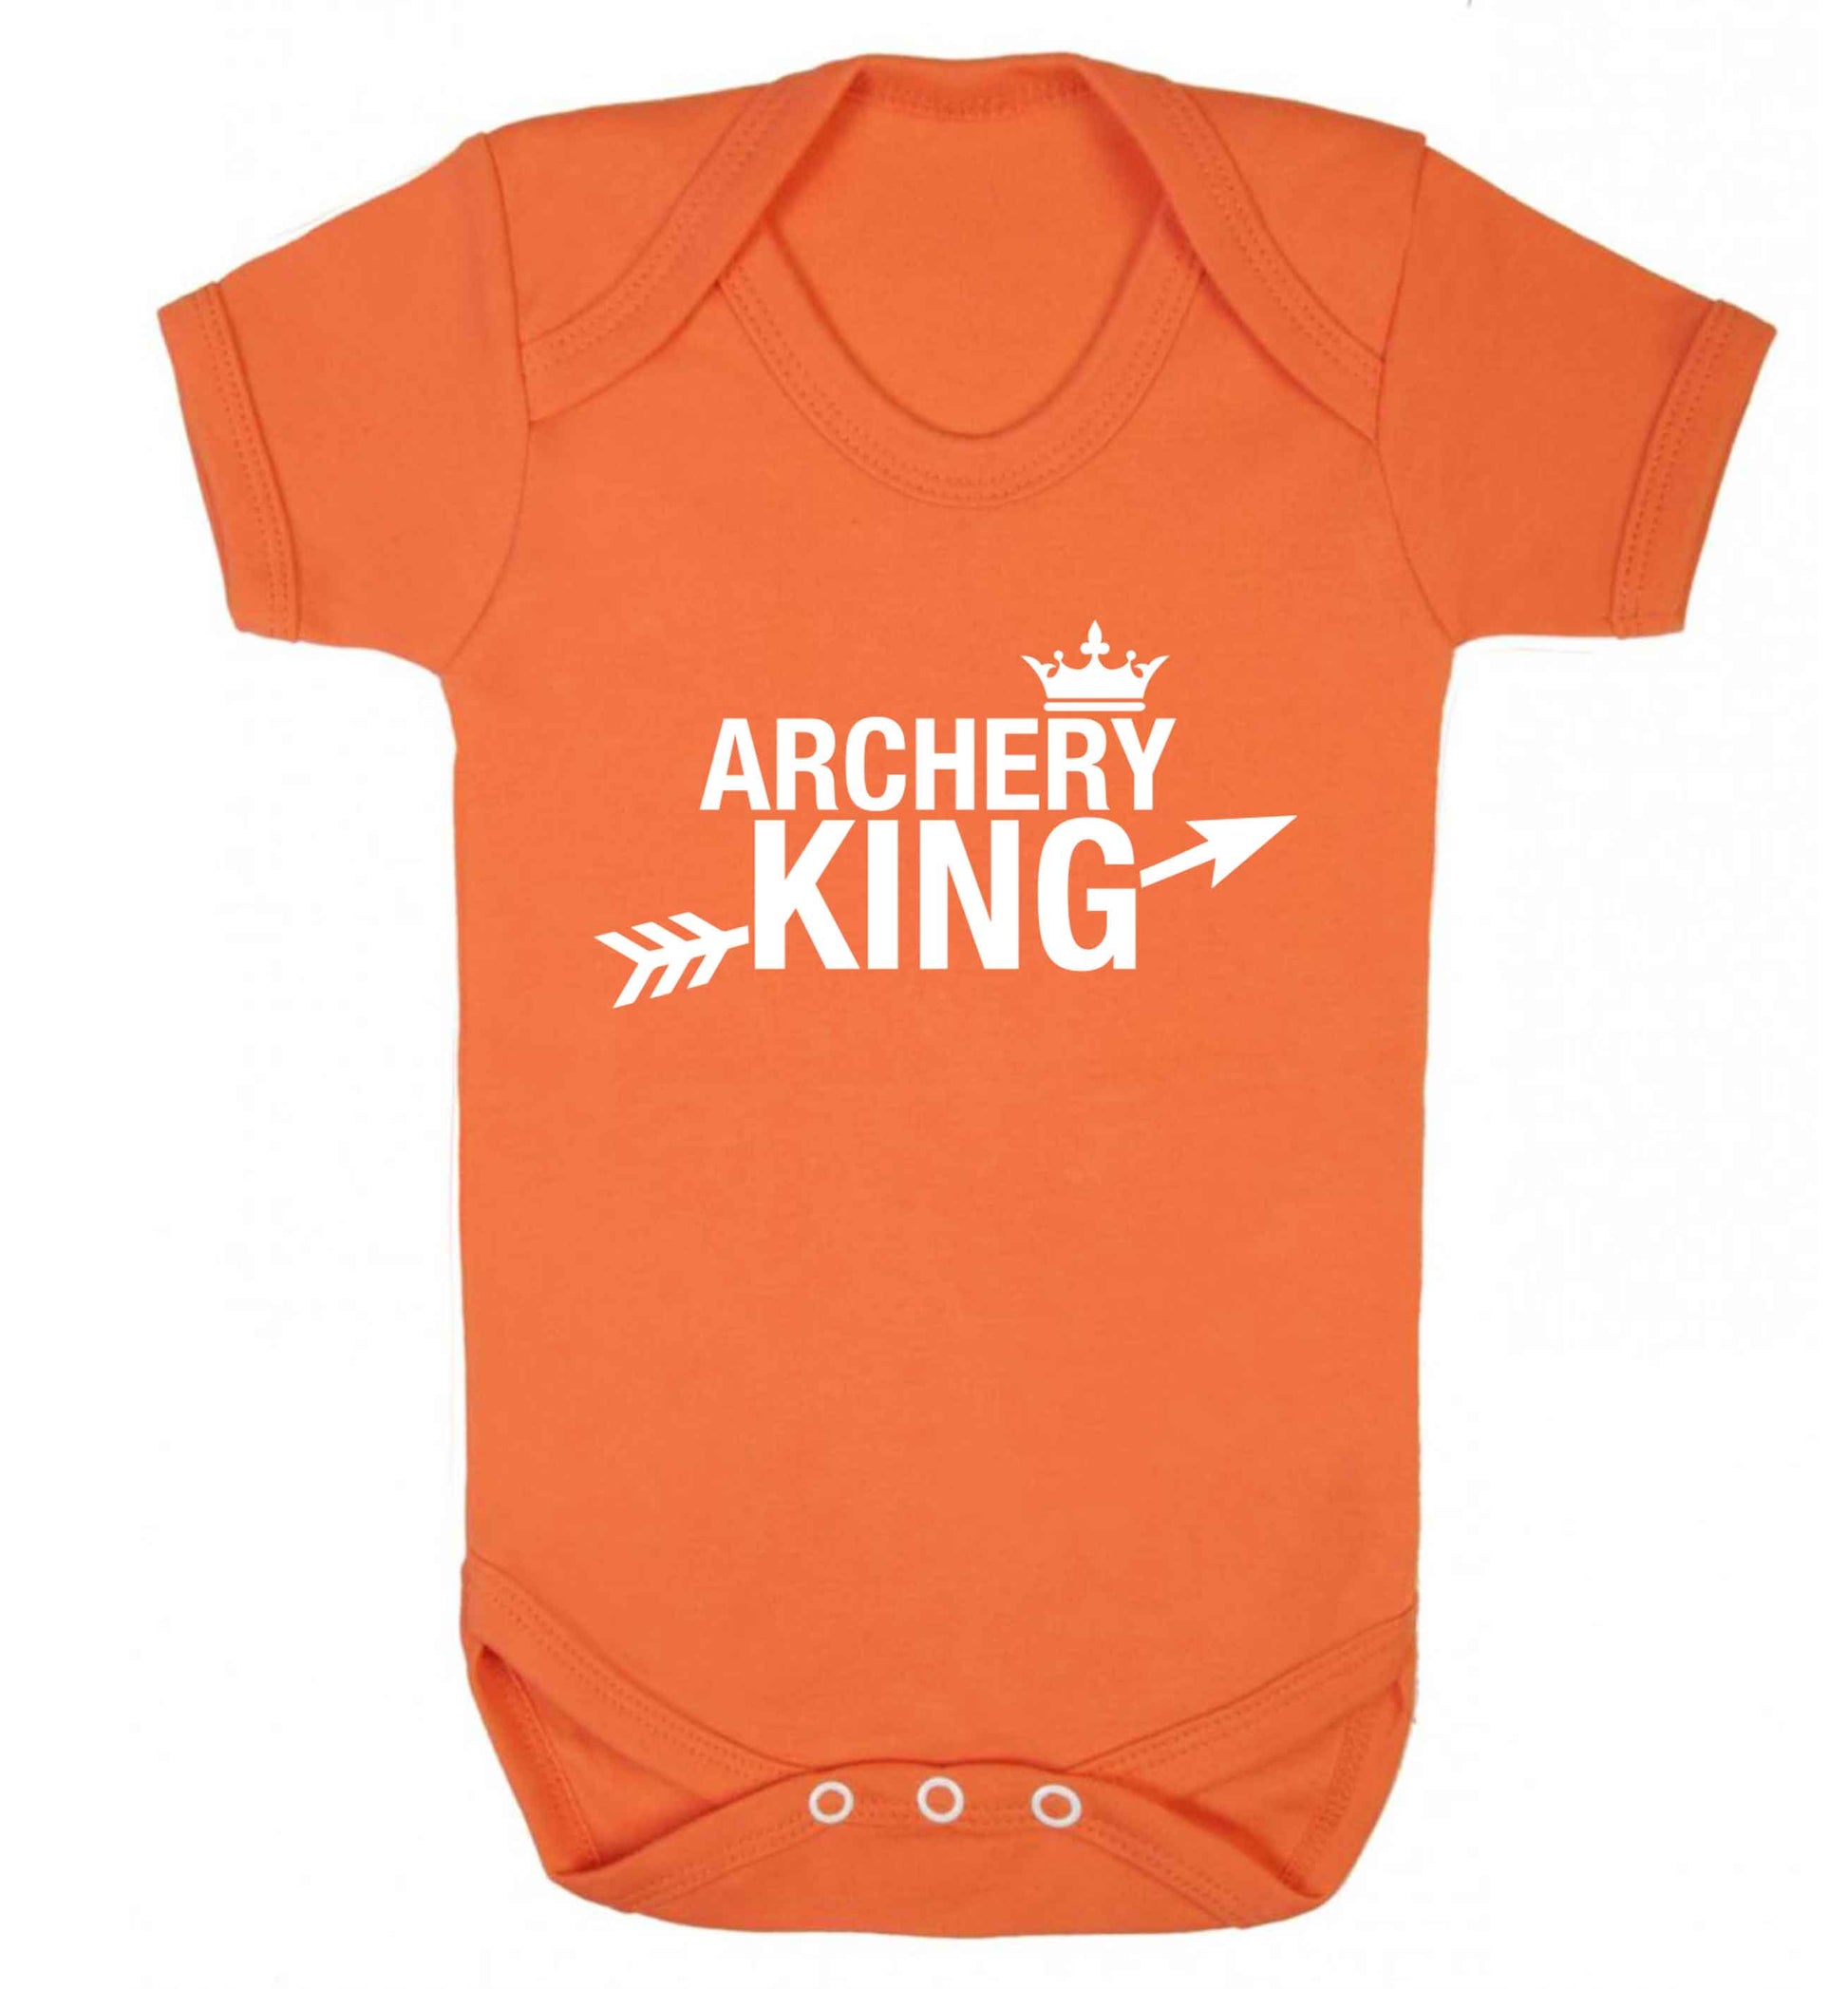 Archery king Baby Vest orange 18-24 months